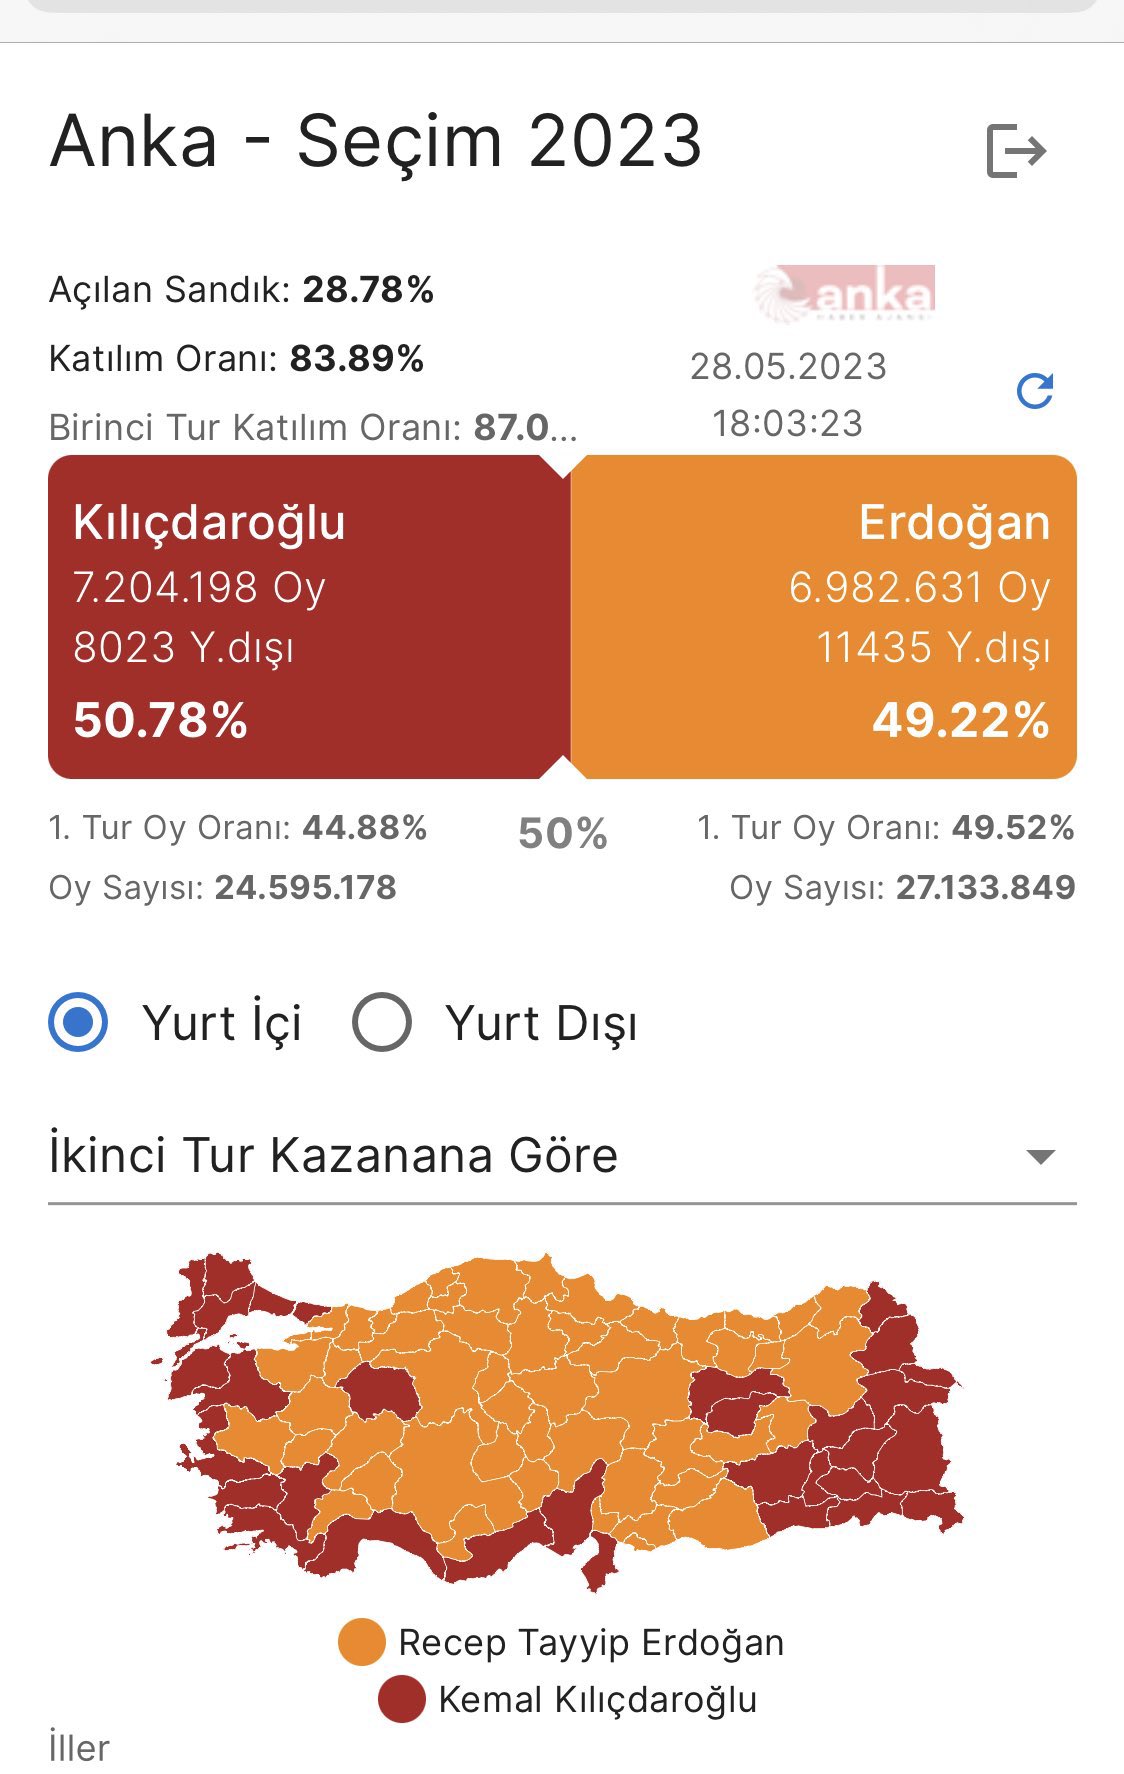 kılıçdaroğlu 50 erdoğan 49